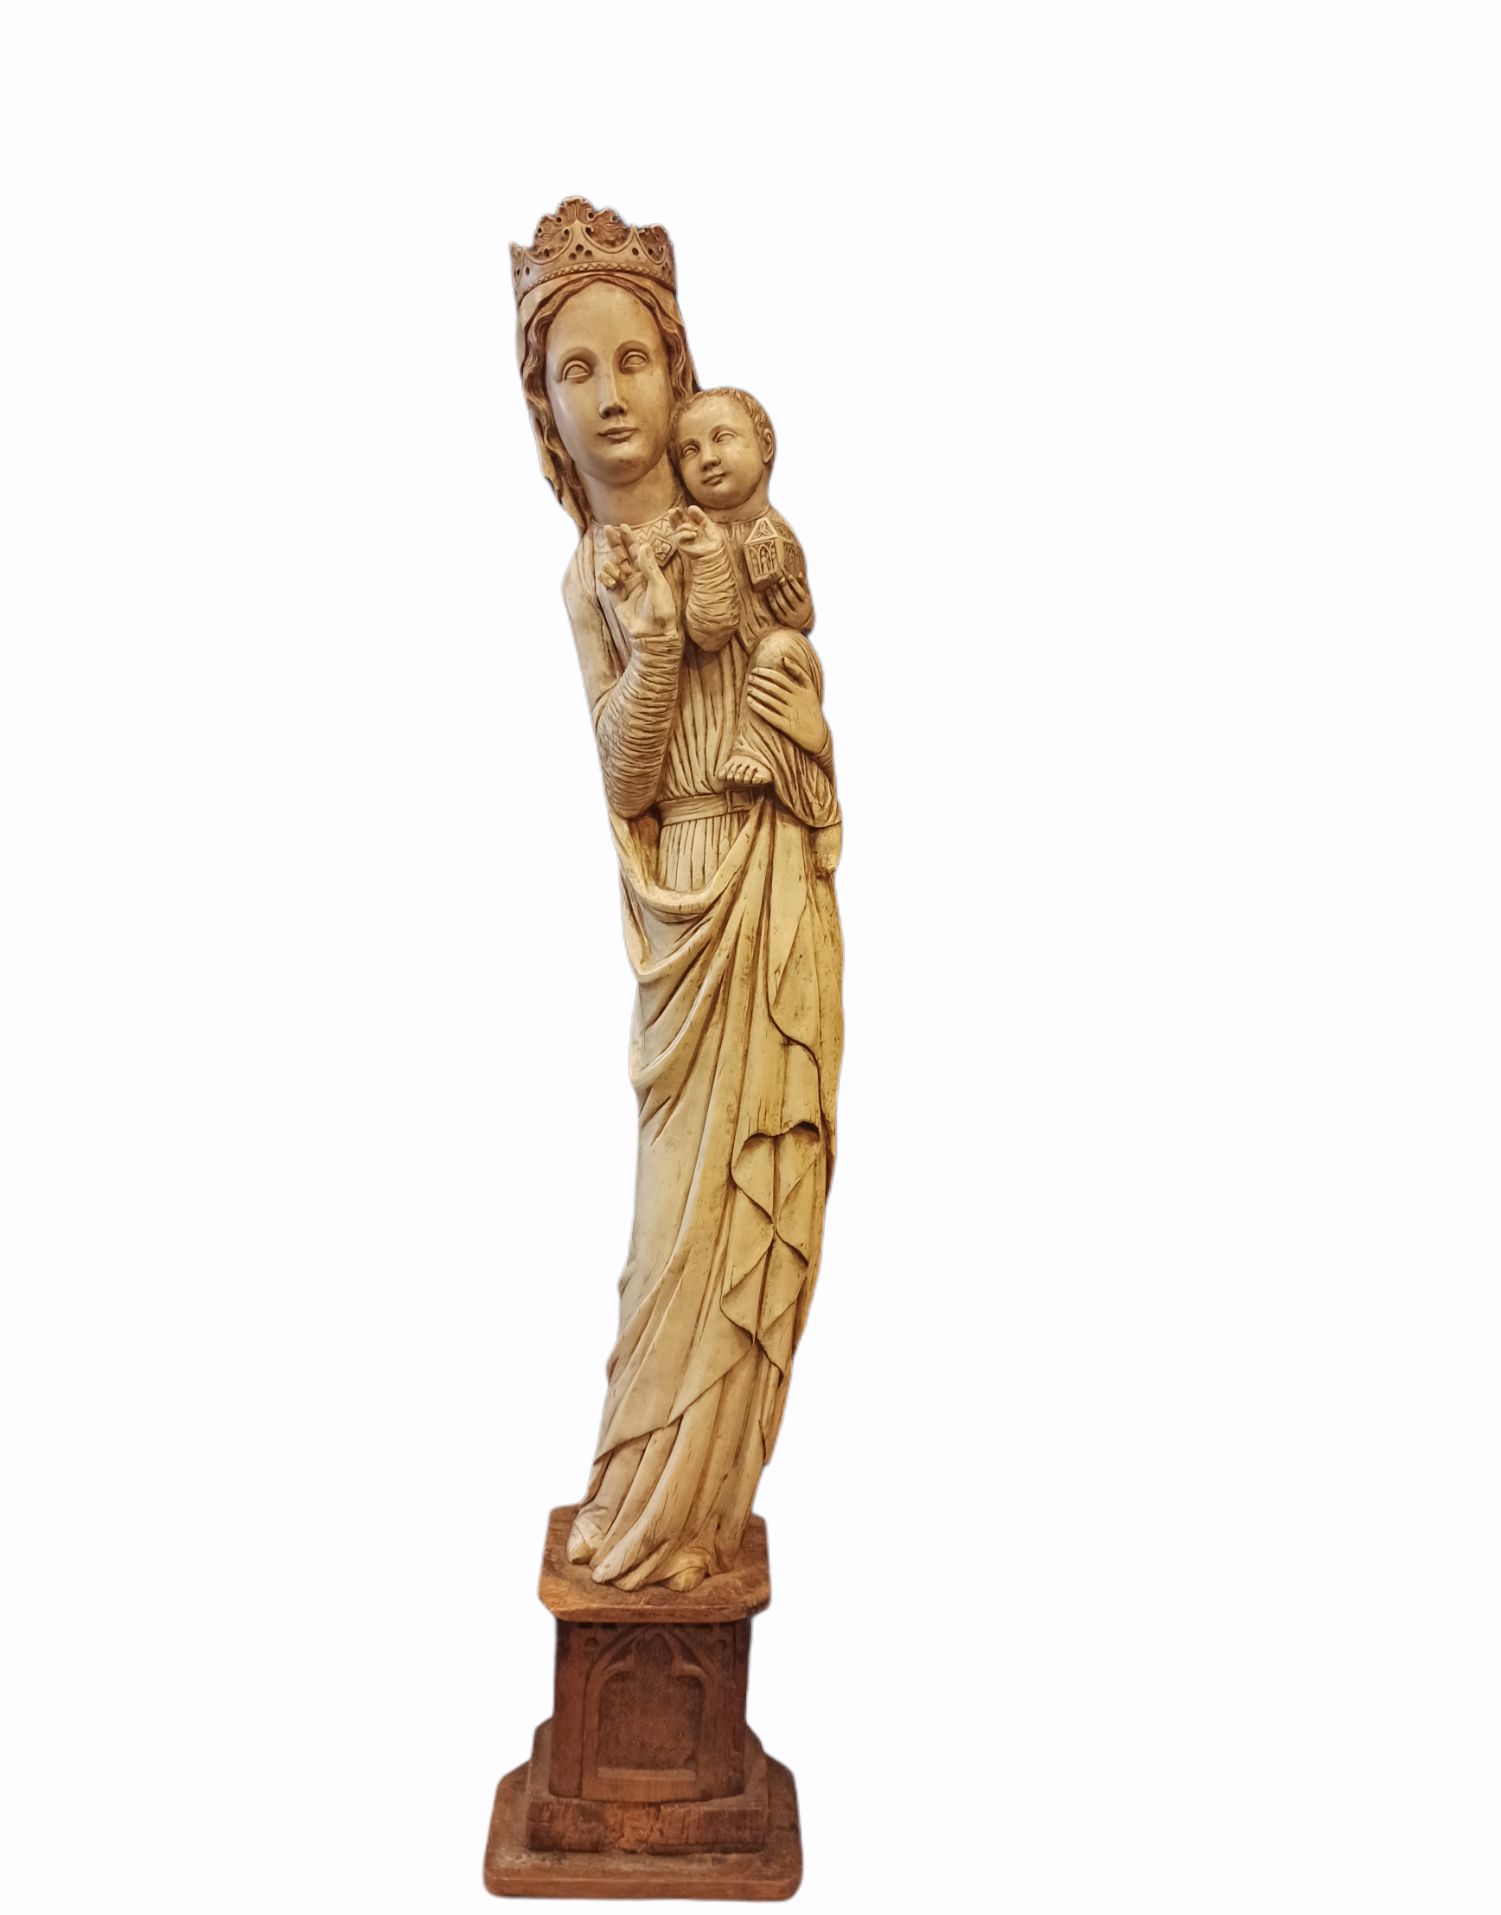 Null 用象牙雕刻的大型处女和儿童，具有中世纪处女的风格，儿童手持神龛。

木质底座上雕刻着哥特式风格。

20世纪初（1947年前）的作品

雕塑的高度：7&hellip;